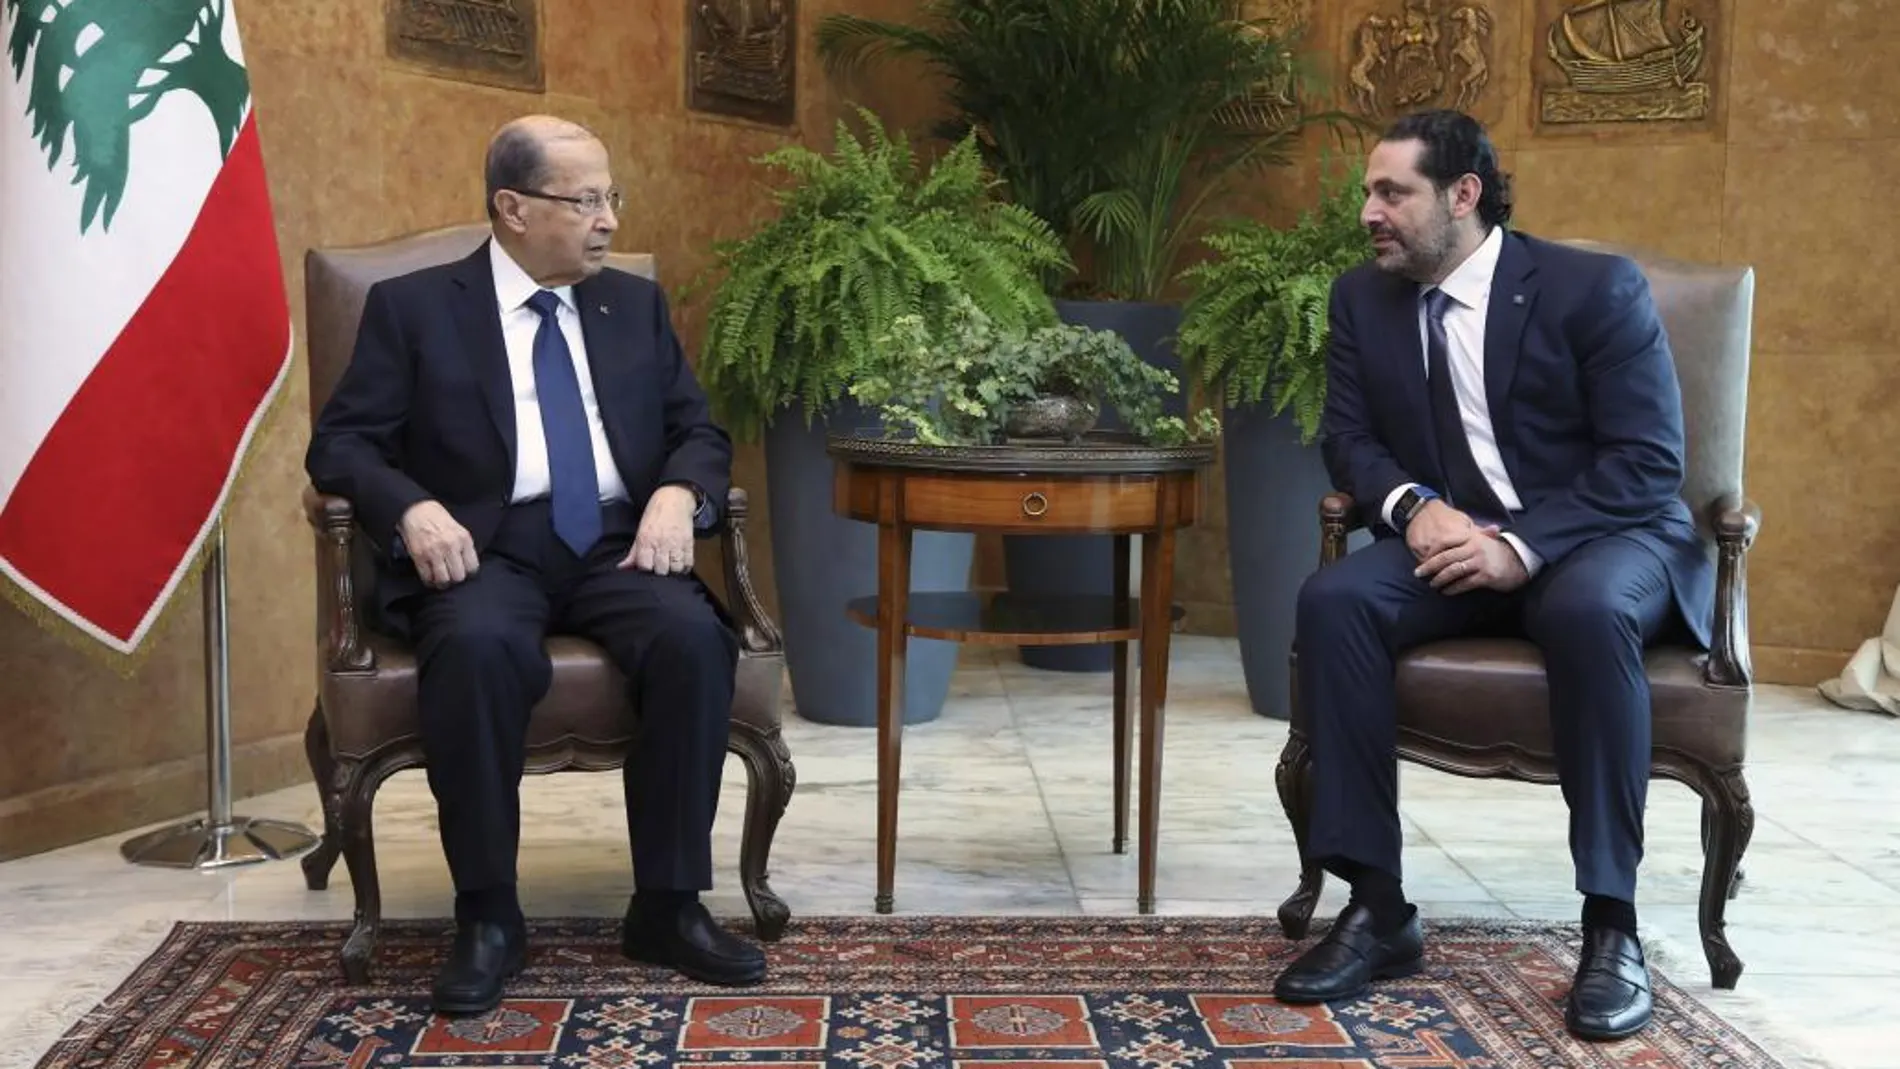 El presidente libanés, Michel Aoun, conversa con el primer ministro dimisionario, Saad Hariri, en el Palacio Presidencial en Baabda, este de Beirut